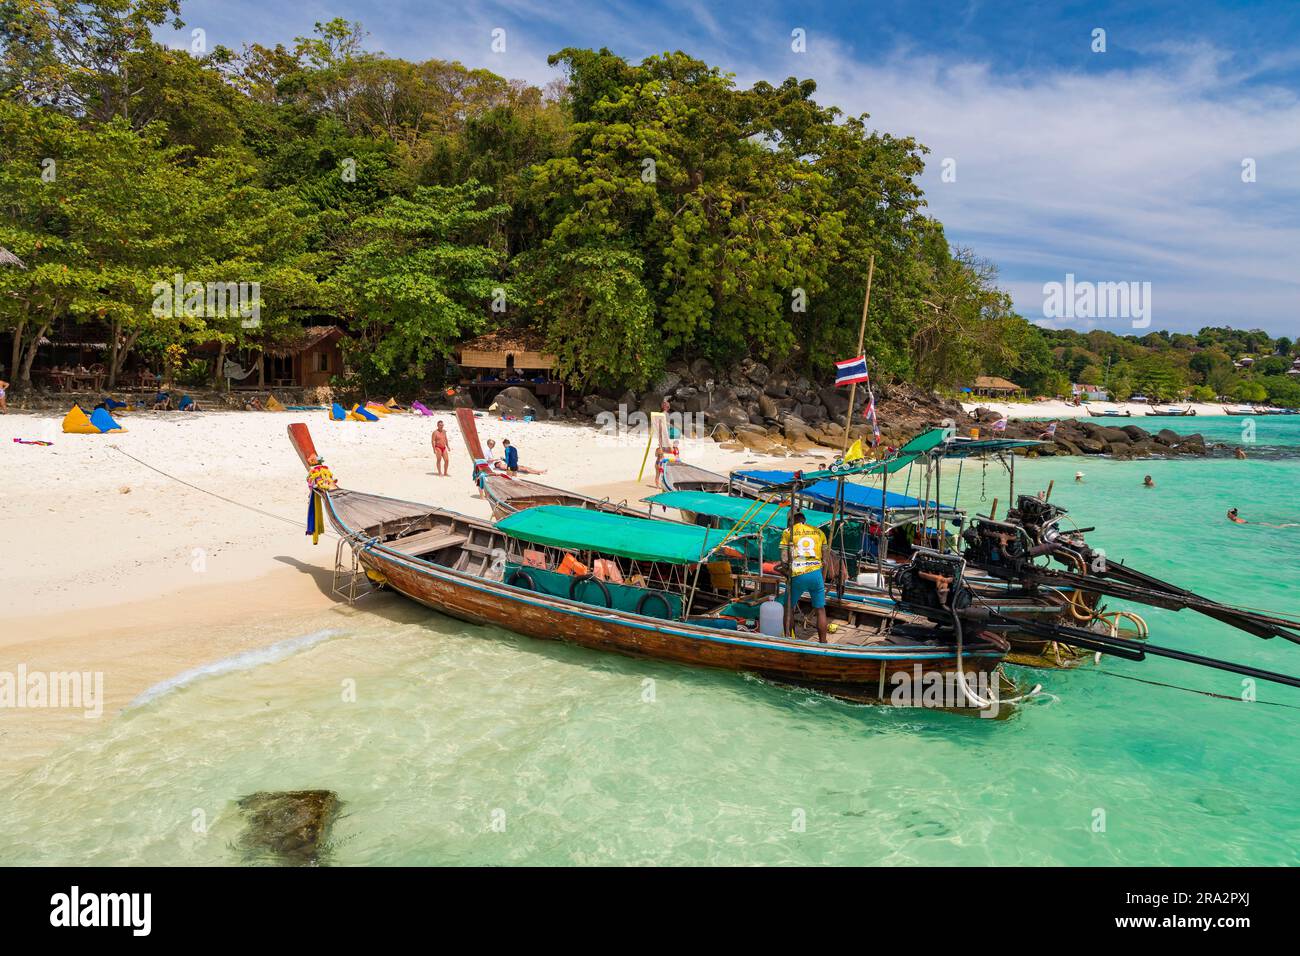 Thaïlande, province de Krabi, île de Koh Phi Phi Don, baie de ton Sai, plage en face de Vikking nature Resort, bateau long Tail Banque D'Images